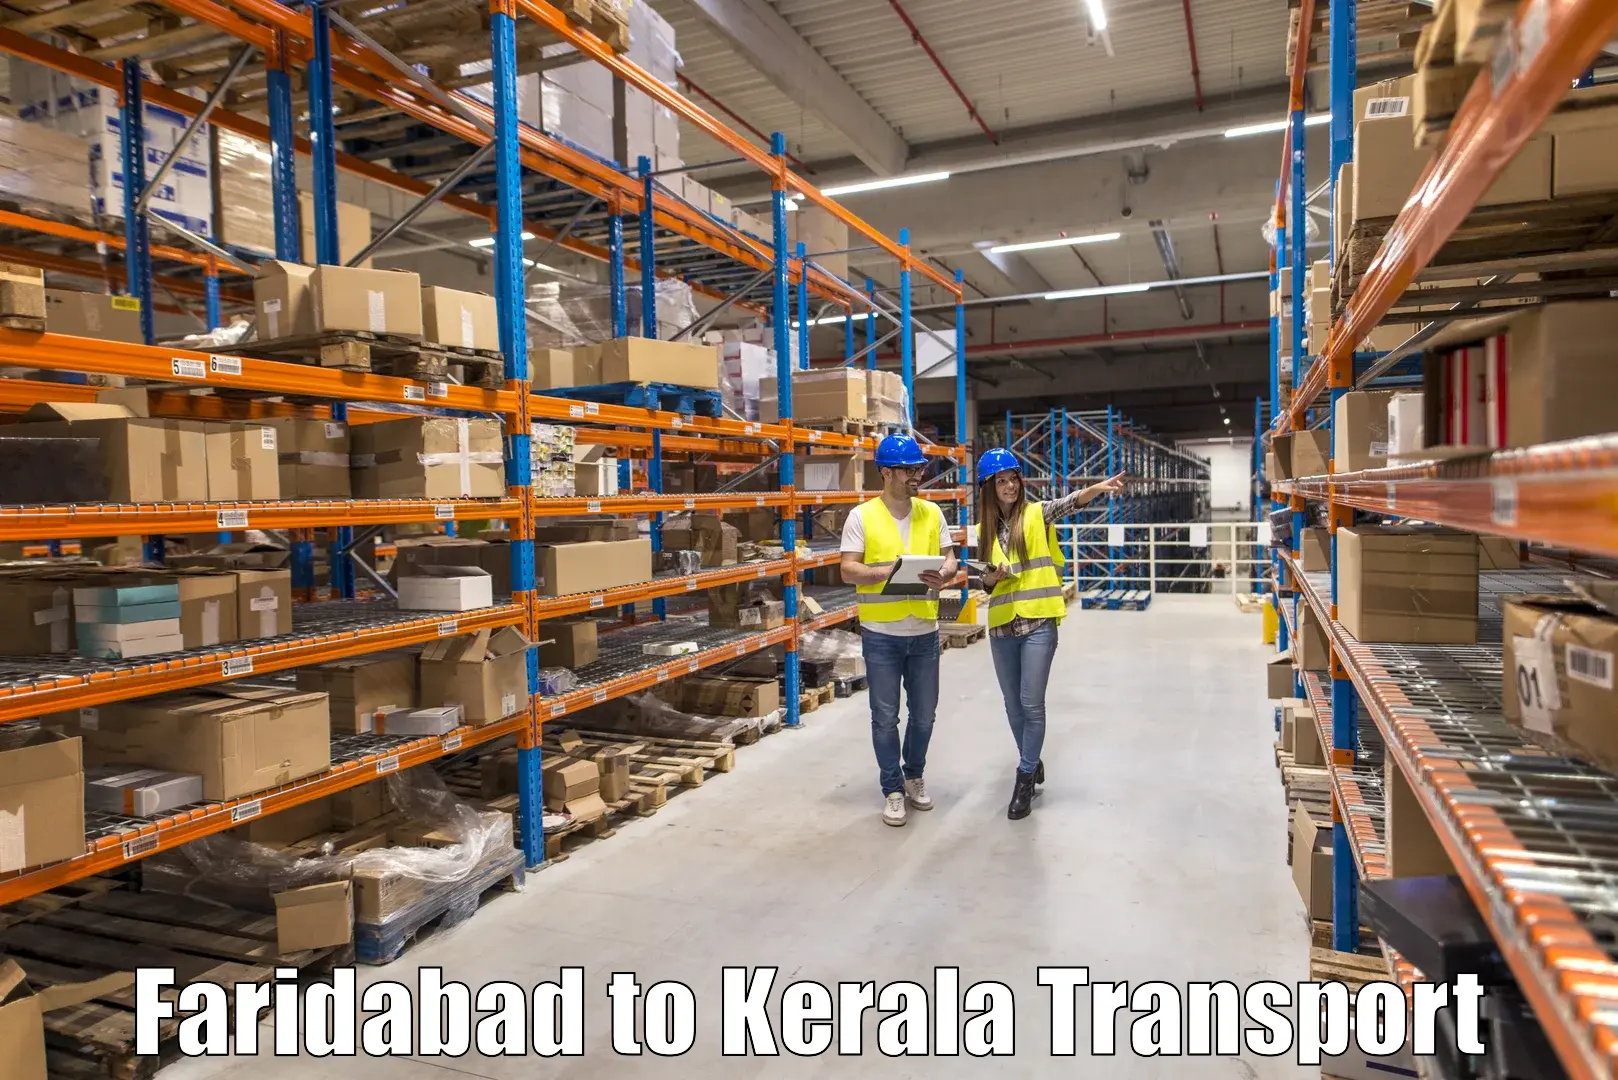 Air freight transport services Faridabad to Kalluvathukkal